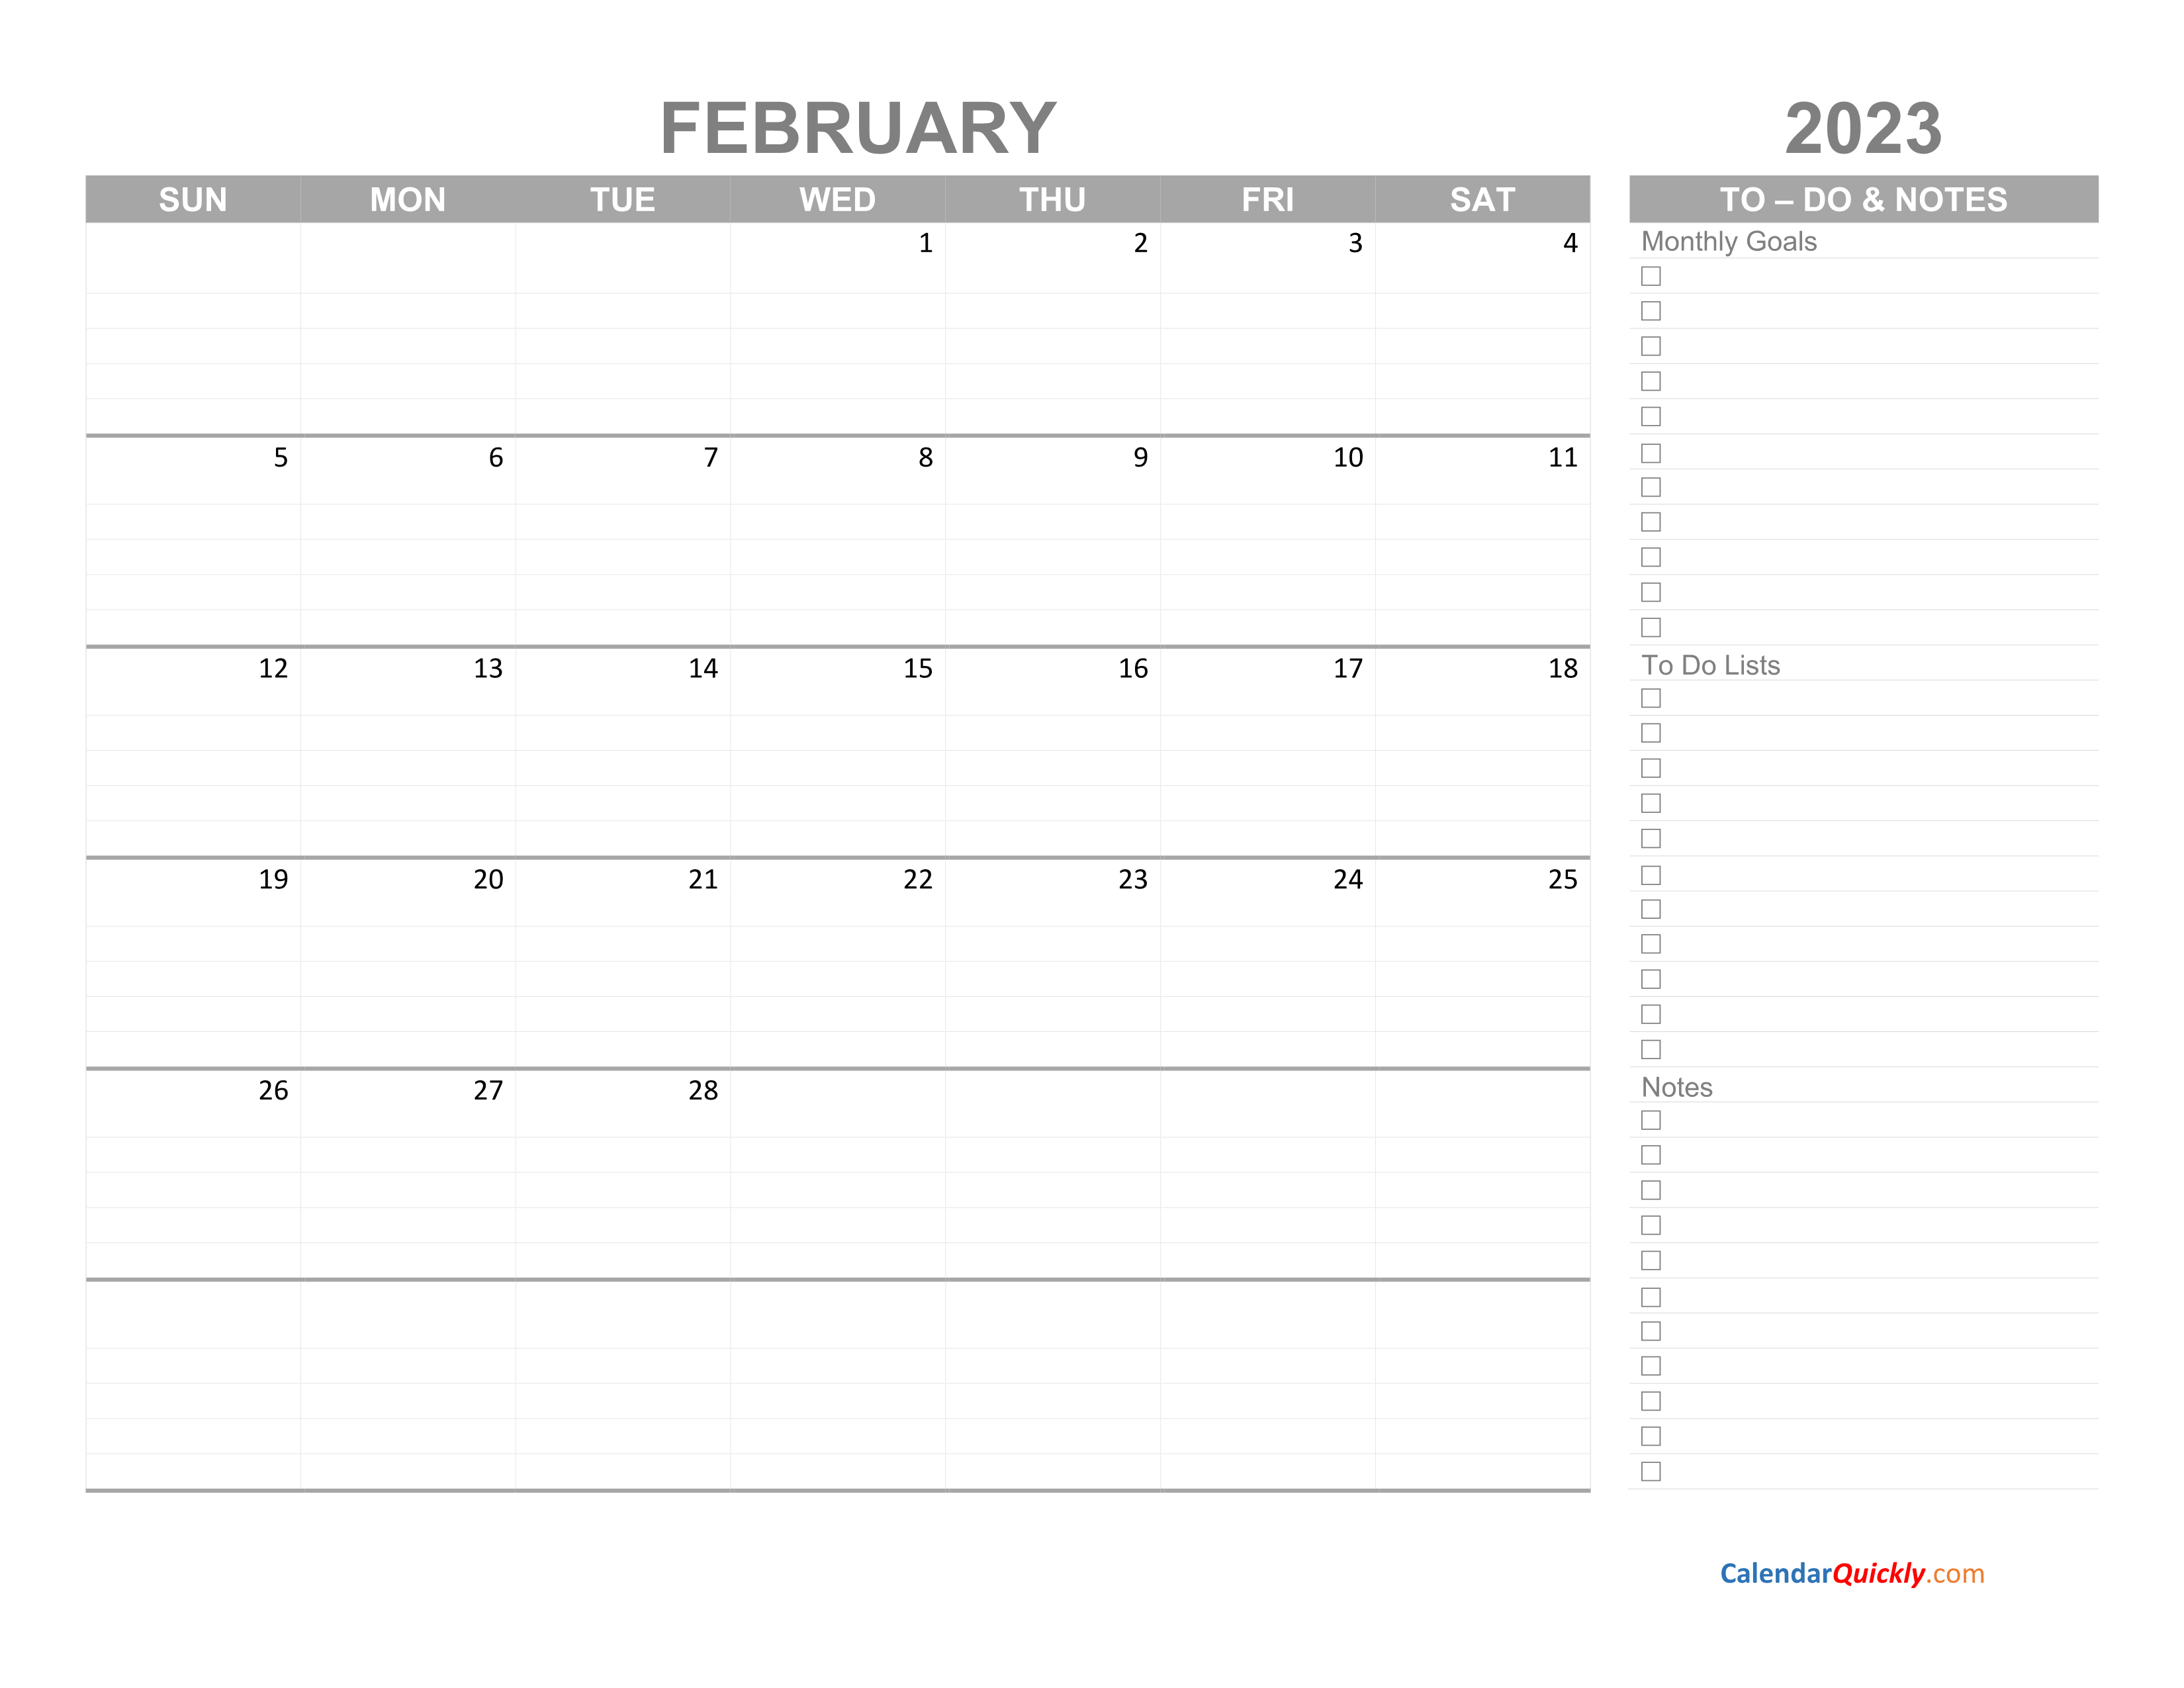 February 2023 Calendar with To-Do List | Calendar Quickly